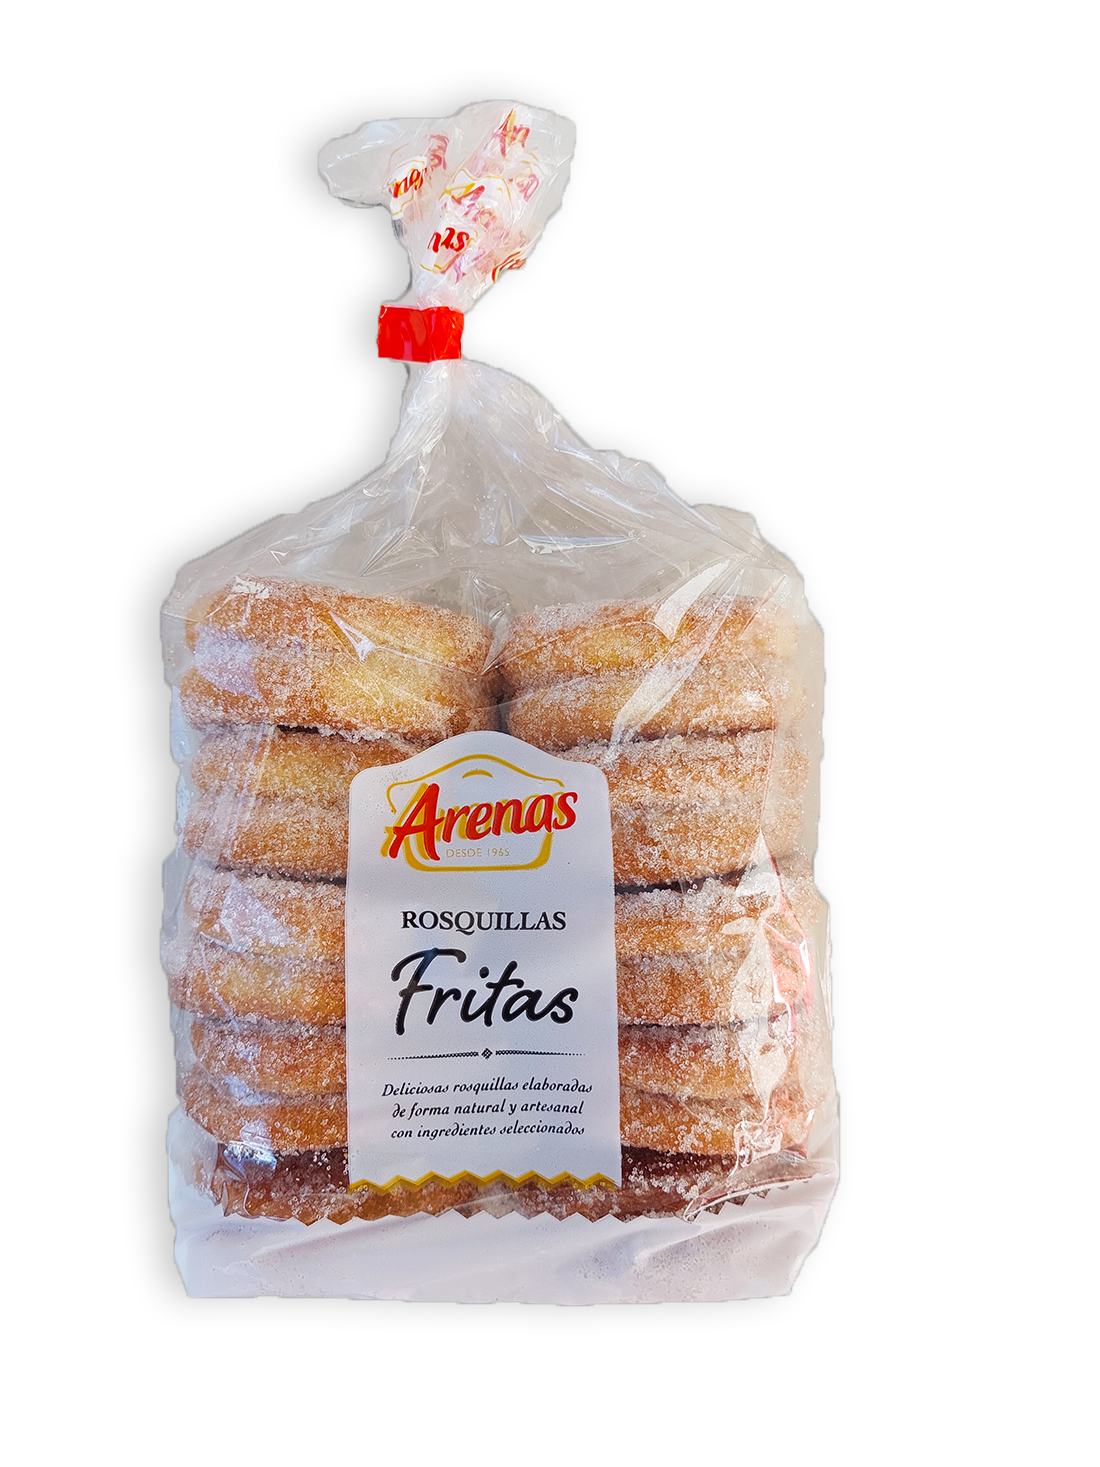 Roscos Fritos Caseros " Arenas "· Bolsa 380 gr